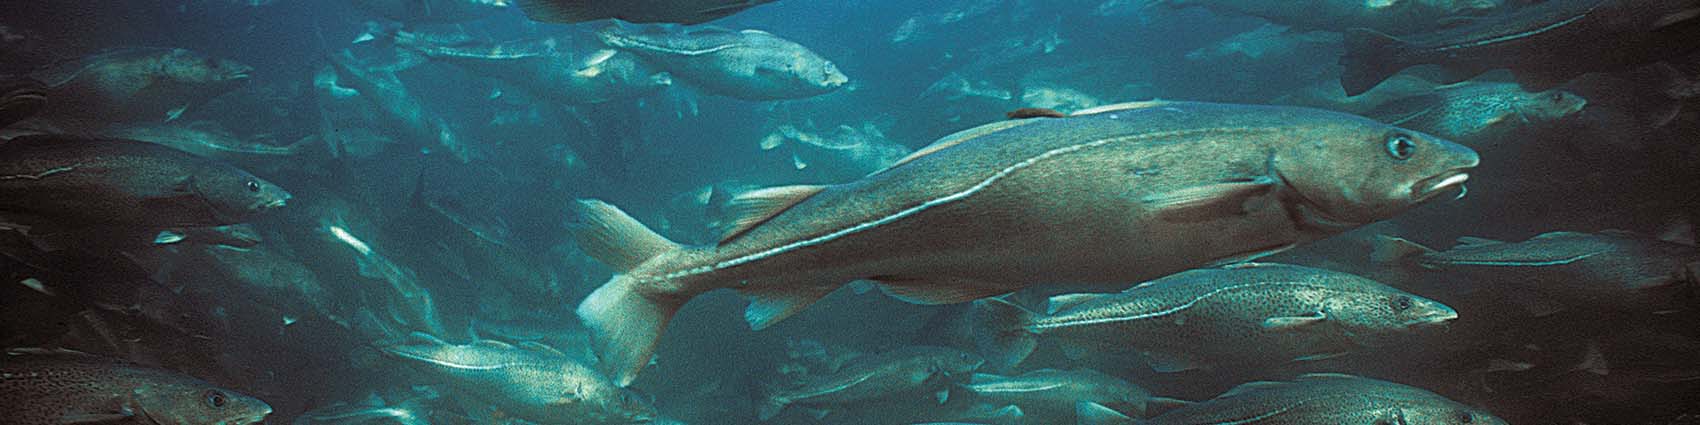 Ochrona środowiska a zmiany klimatu | Spadek liczebności ryb w Bałtyku | Malejąca populacja ryb w Morzu Bałtyckim